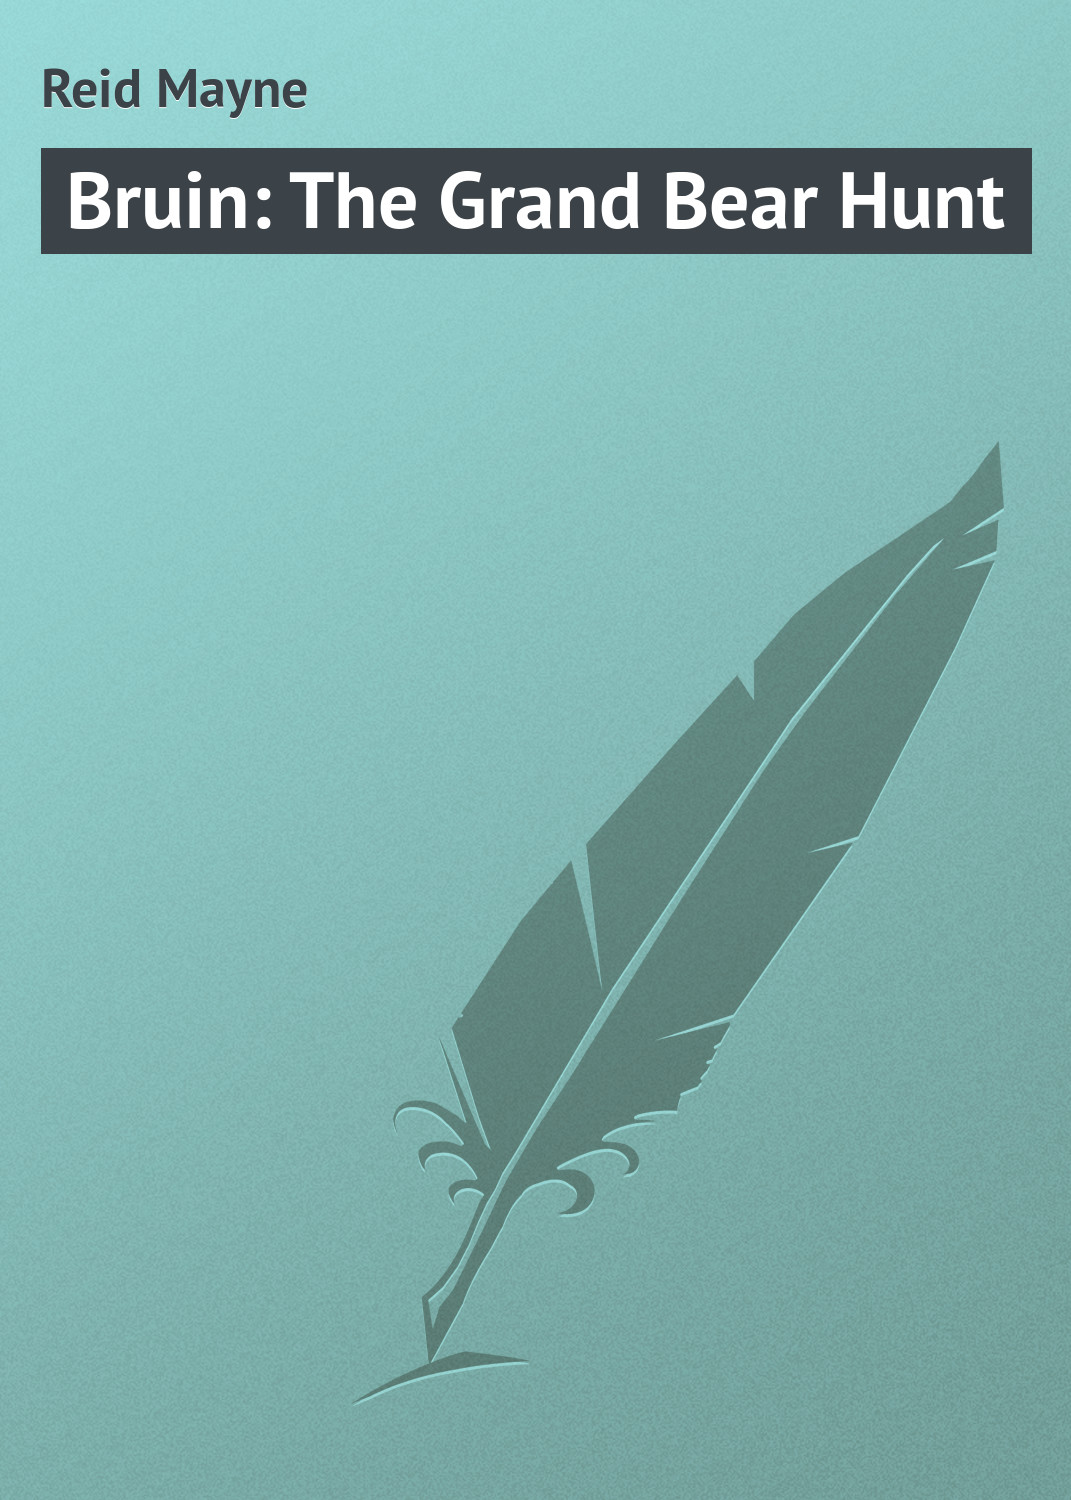 Книга Bruin: The Grand Bear Hunt из серии , созданная Mayne Reid, может относится к жанру Приключения: прочее, Зарубежная классика. Стоимость электронной книги Bruin: The Grand Bear Hunt с идентификатором 23148155 составляет 5.99 руб.